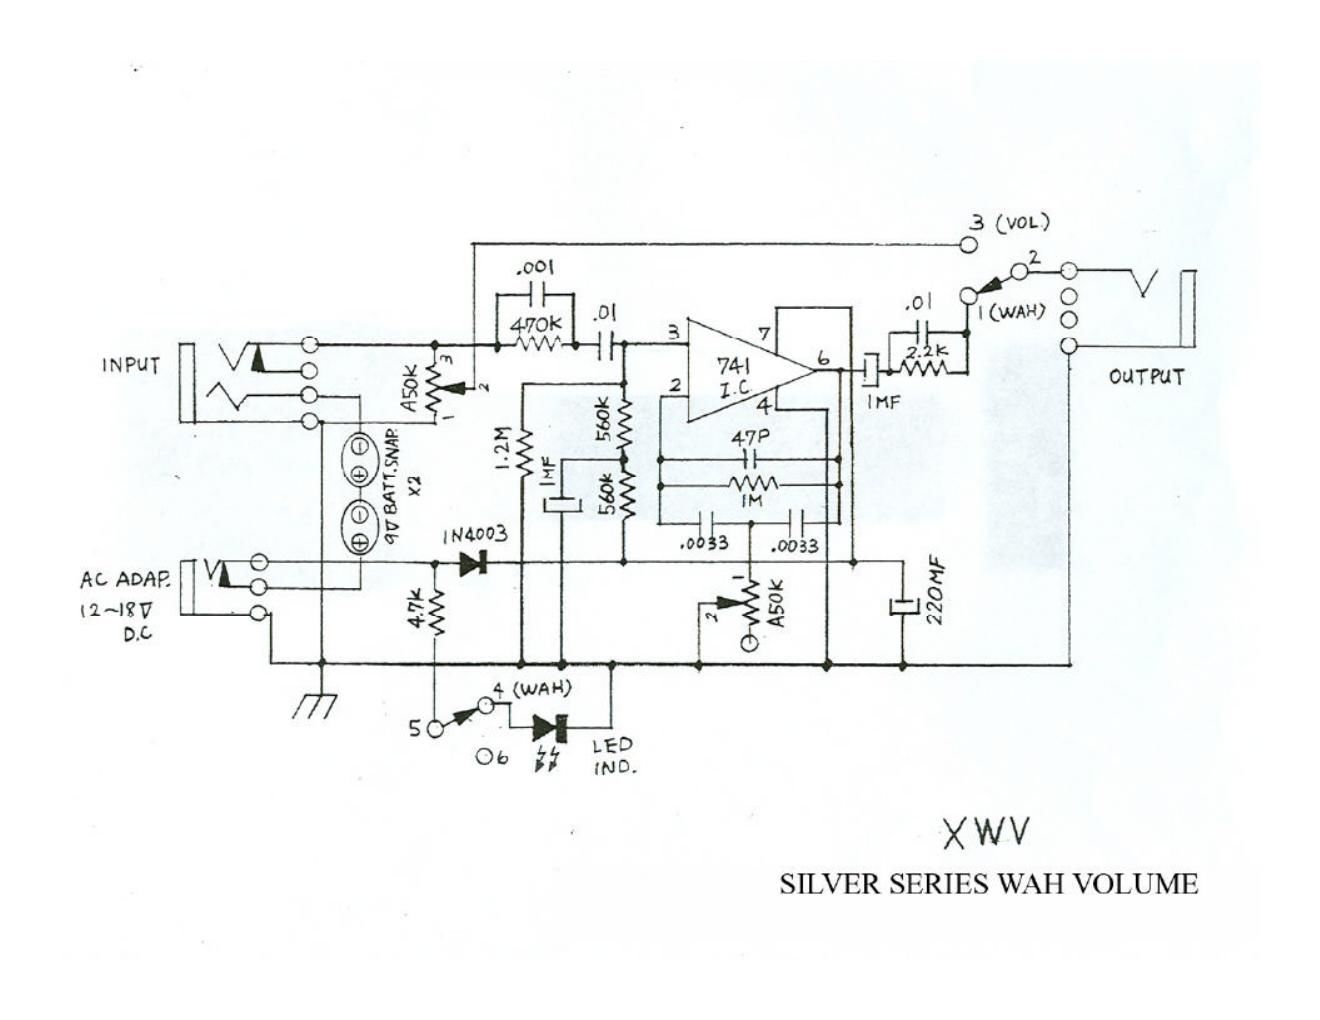 Morley XWV Silver Series Wah Volume Schematic